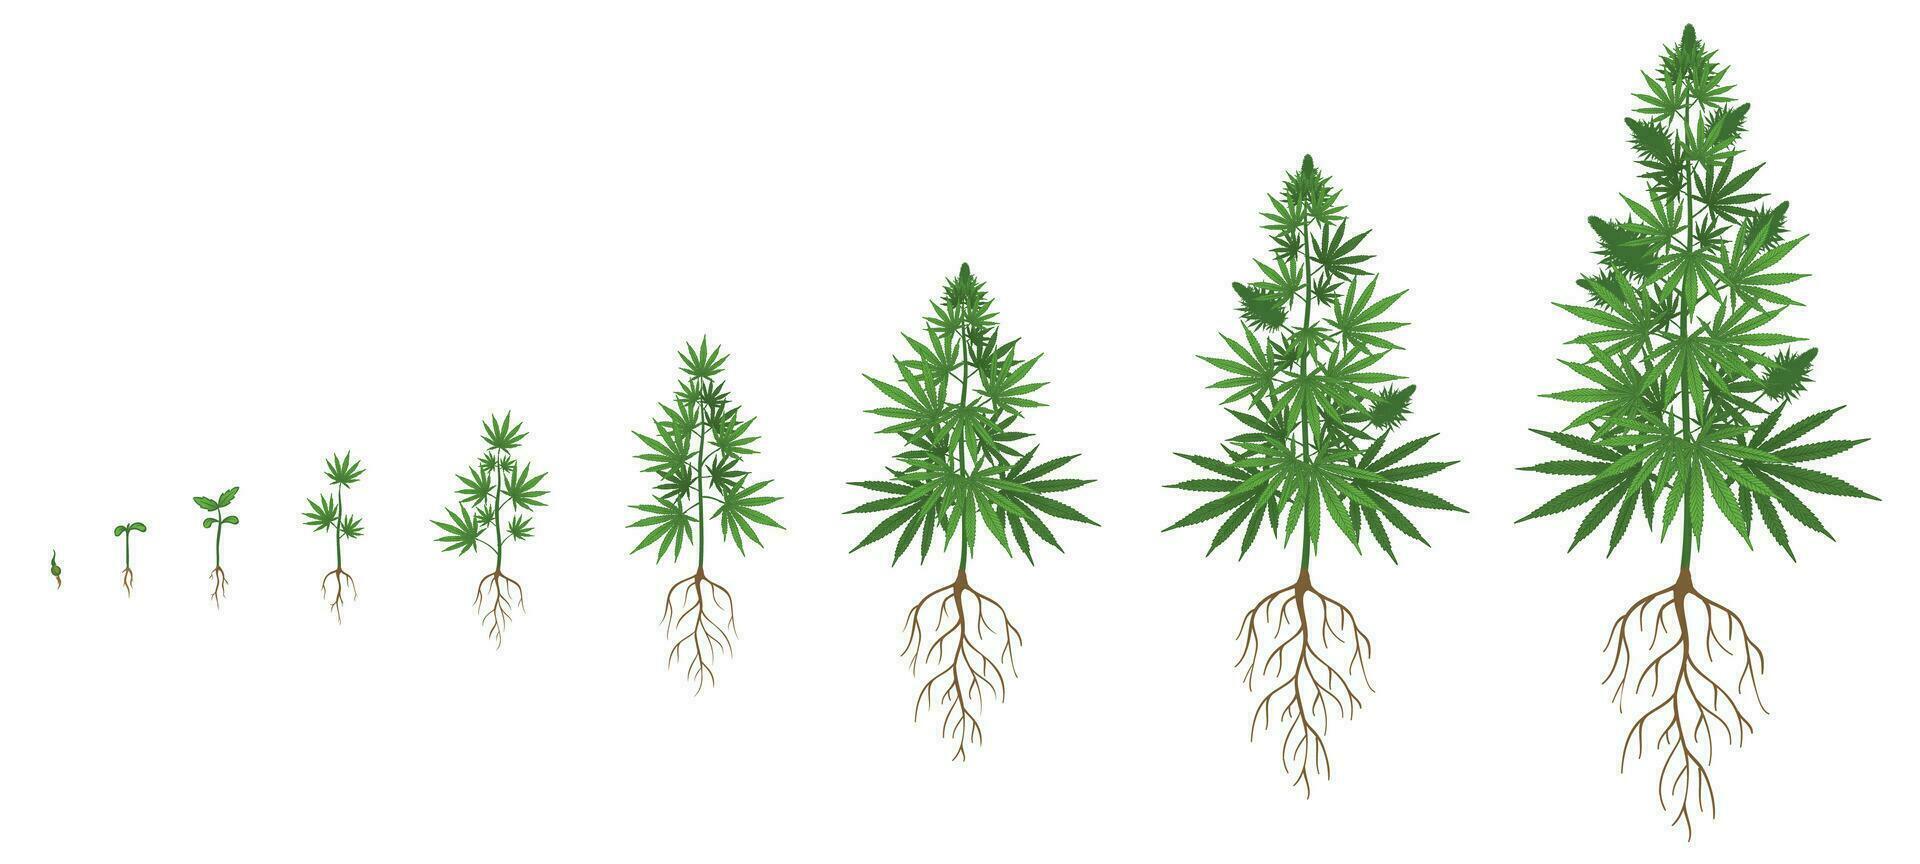 hampa växt tillväxt cykel. cannabis odling, plantering marijuana frön och hampa växter stadier av tillväxt vektor illustration